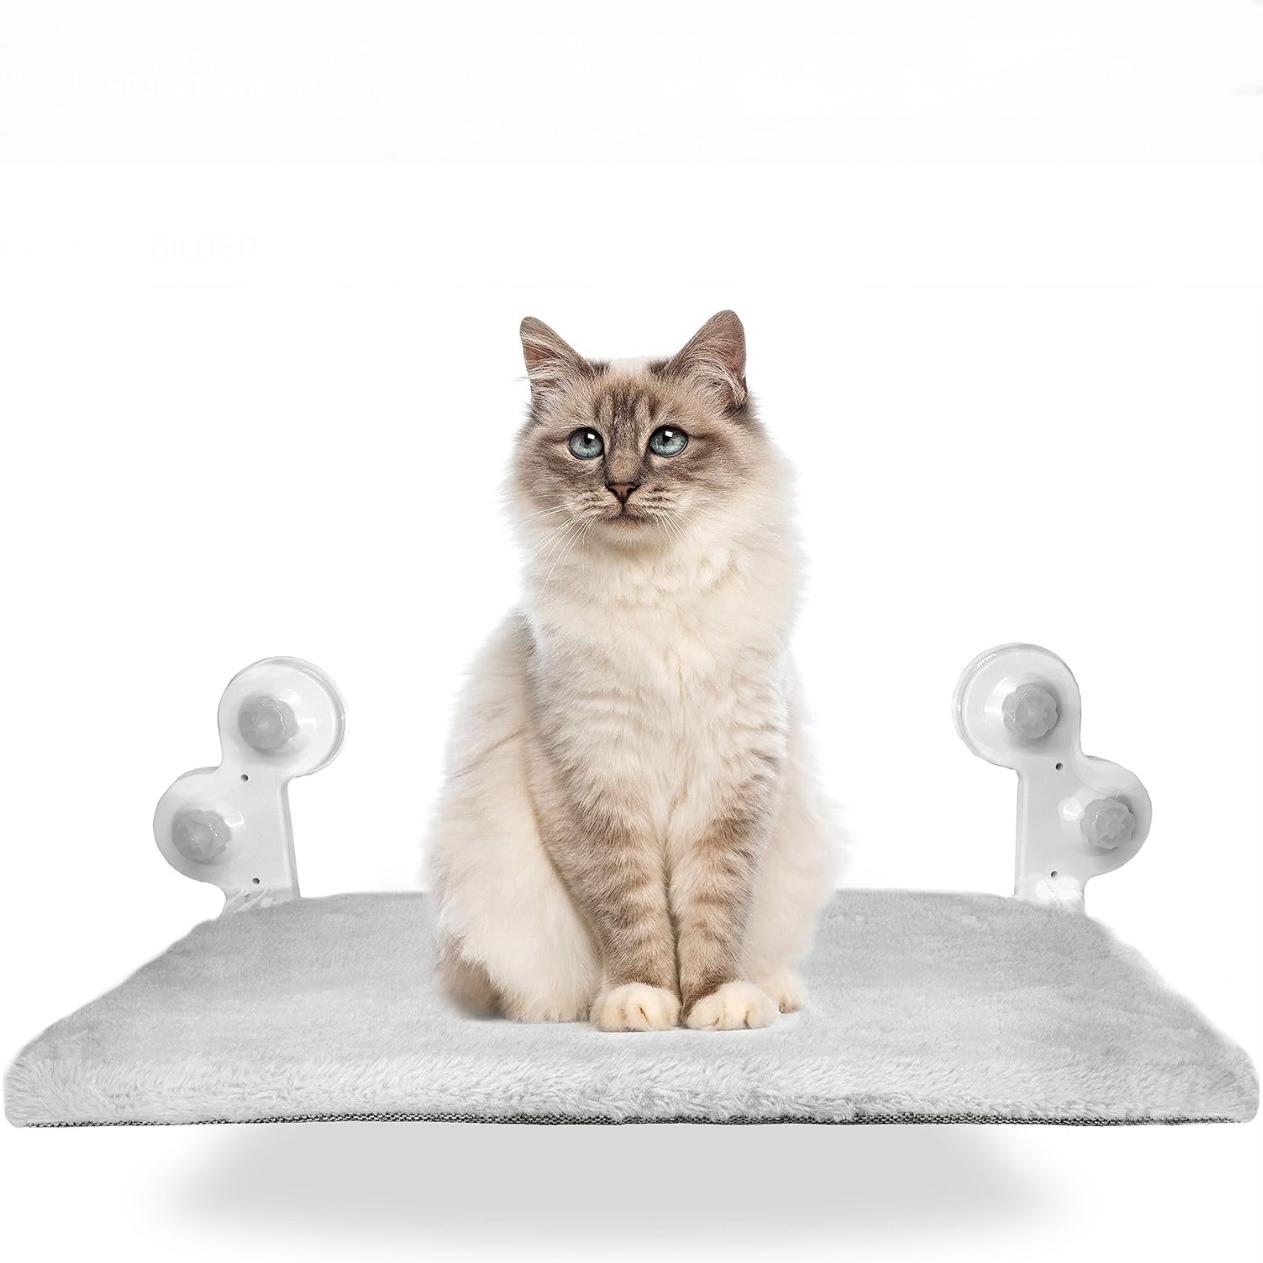 Seelentier® cat hammock